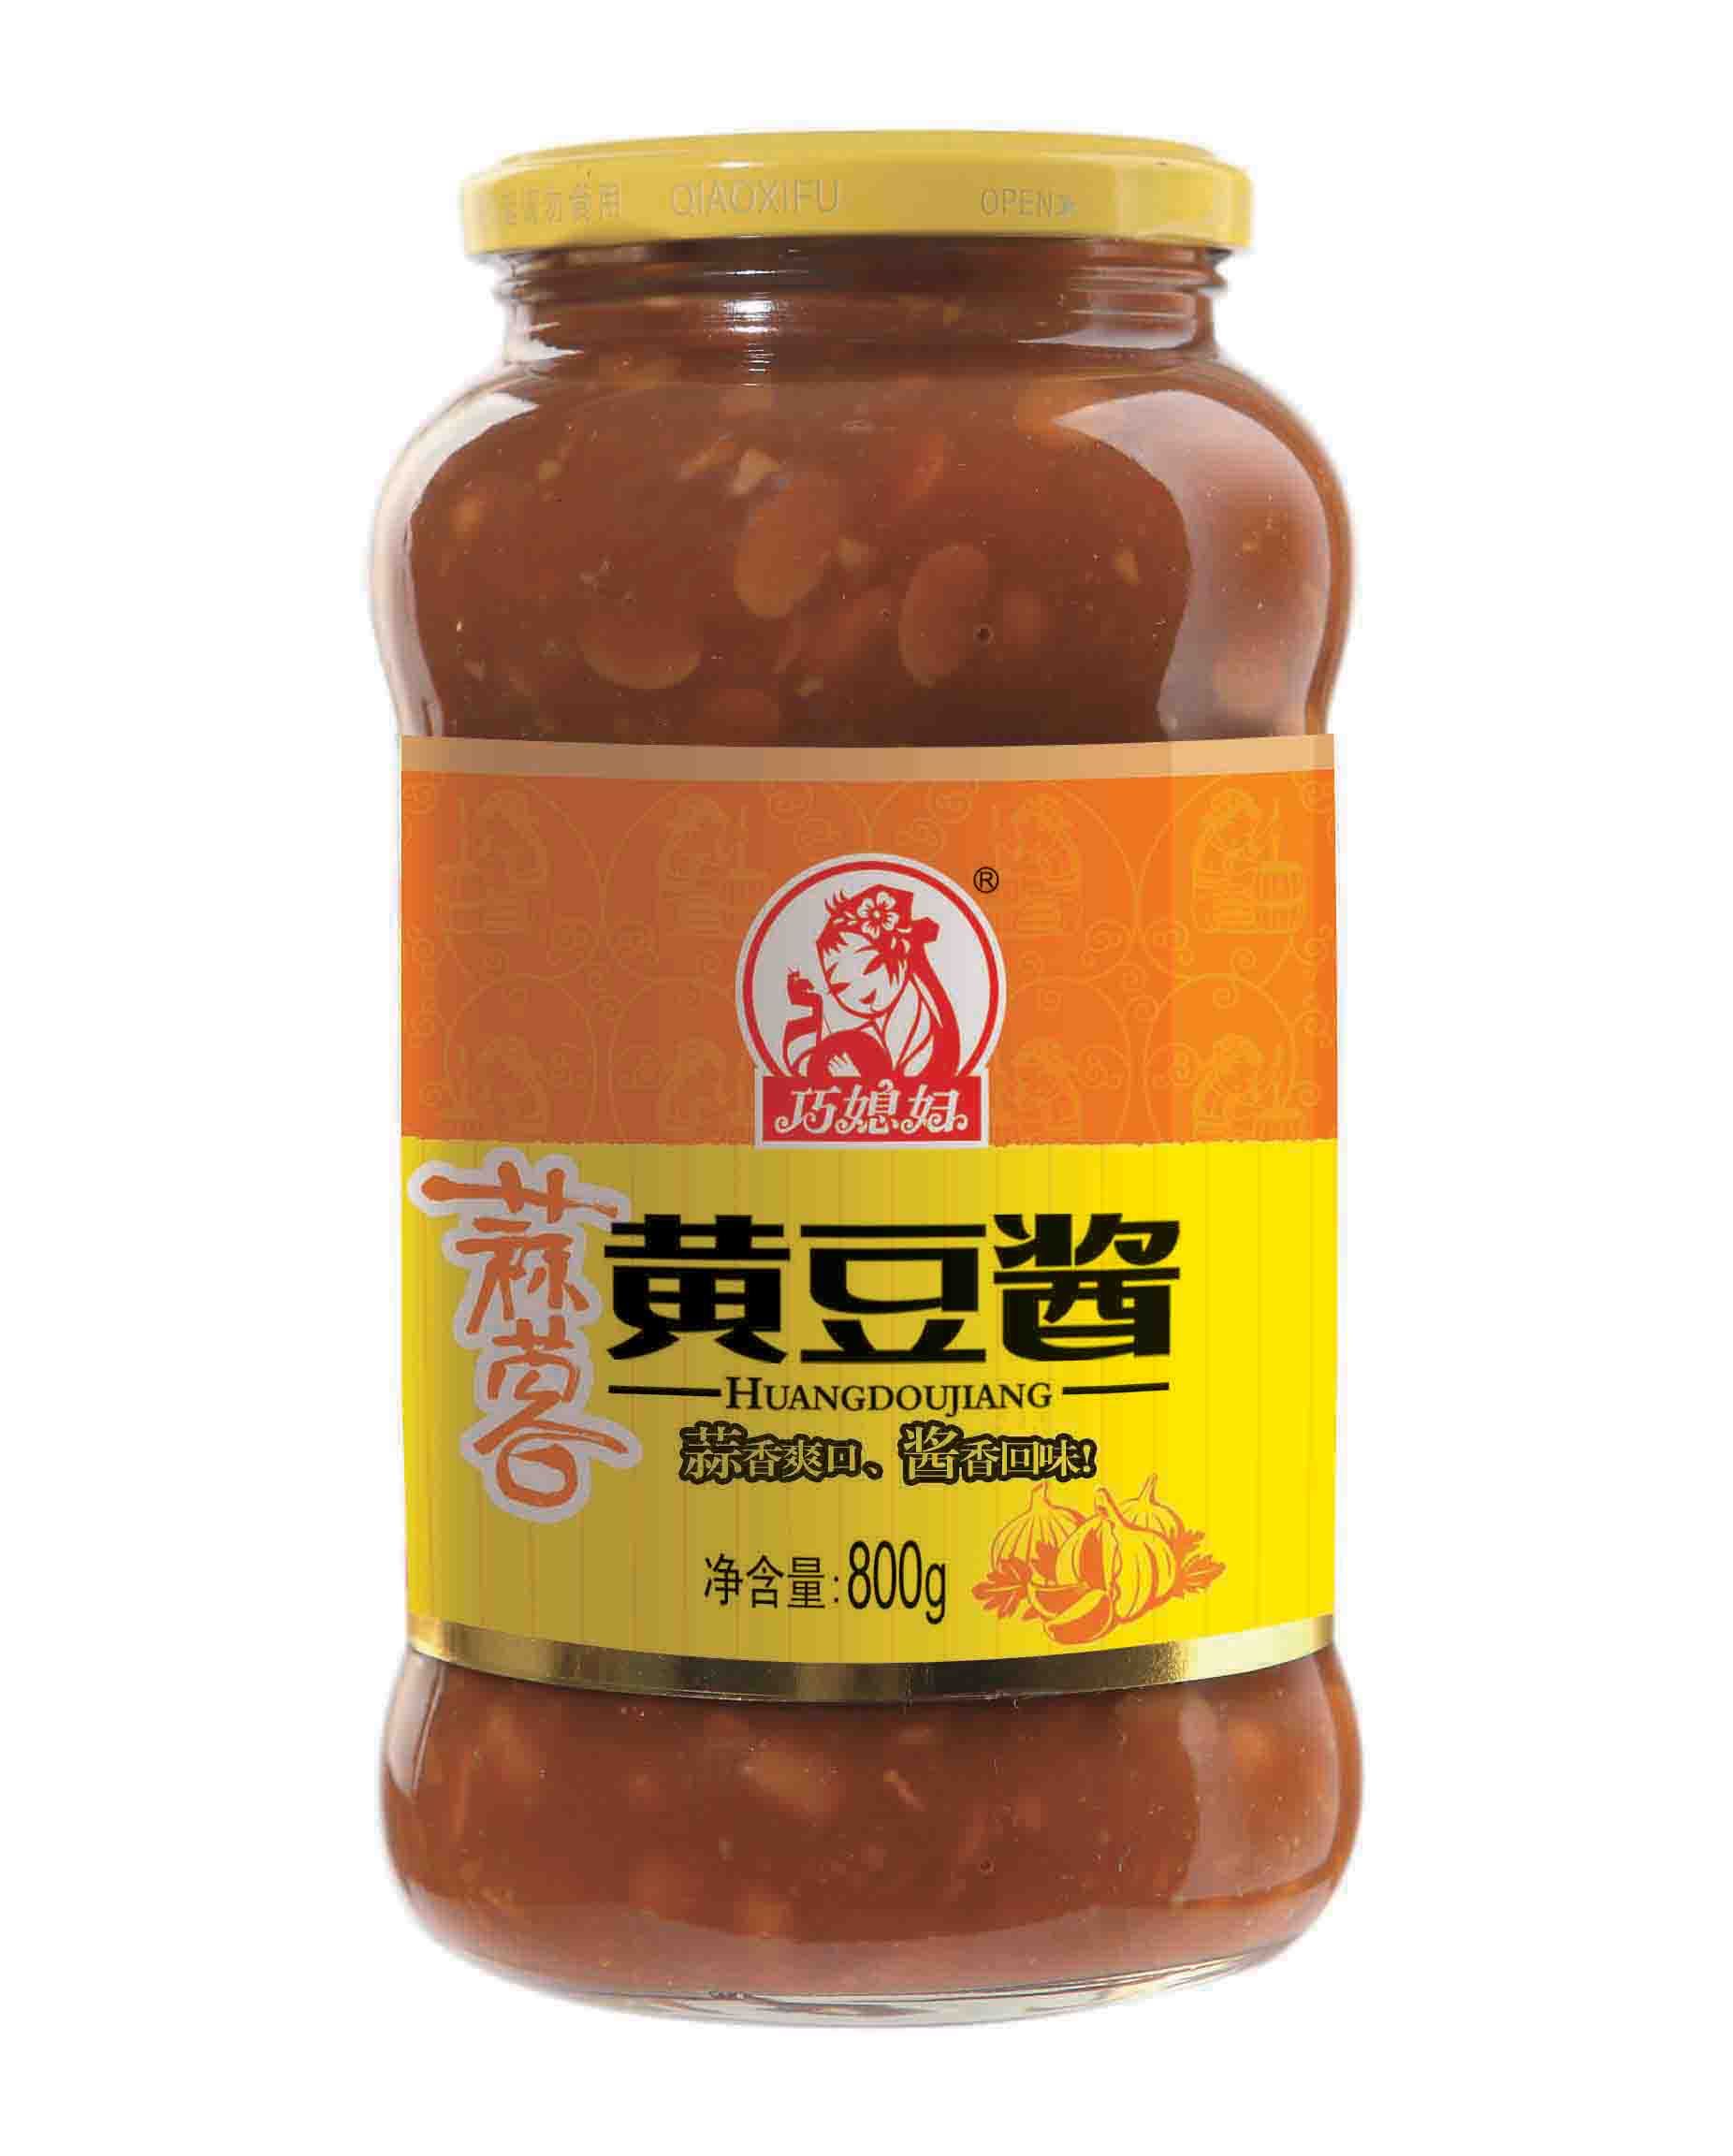 海天 黄豆酱(辣) | HT Spicy Soybean Sauce 340g - HappyGo Asian Market